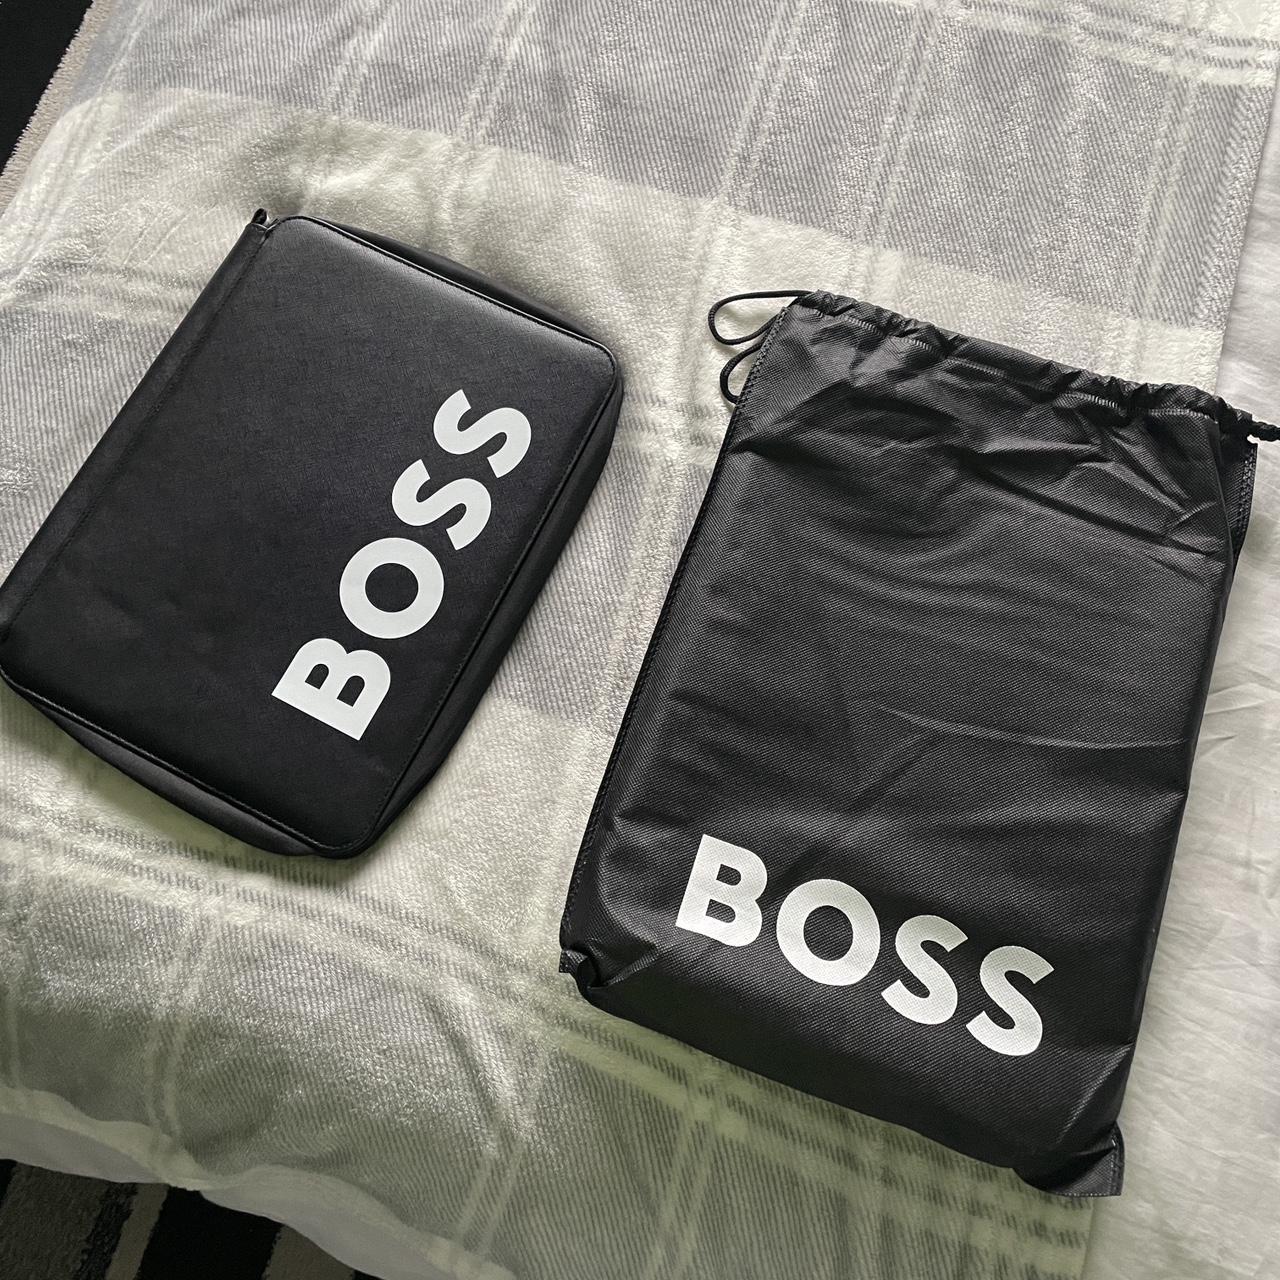 Brand new Hugo Boss laptop / tablet bag #boss #hugoboss - Depop